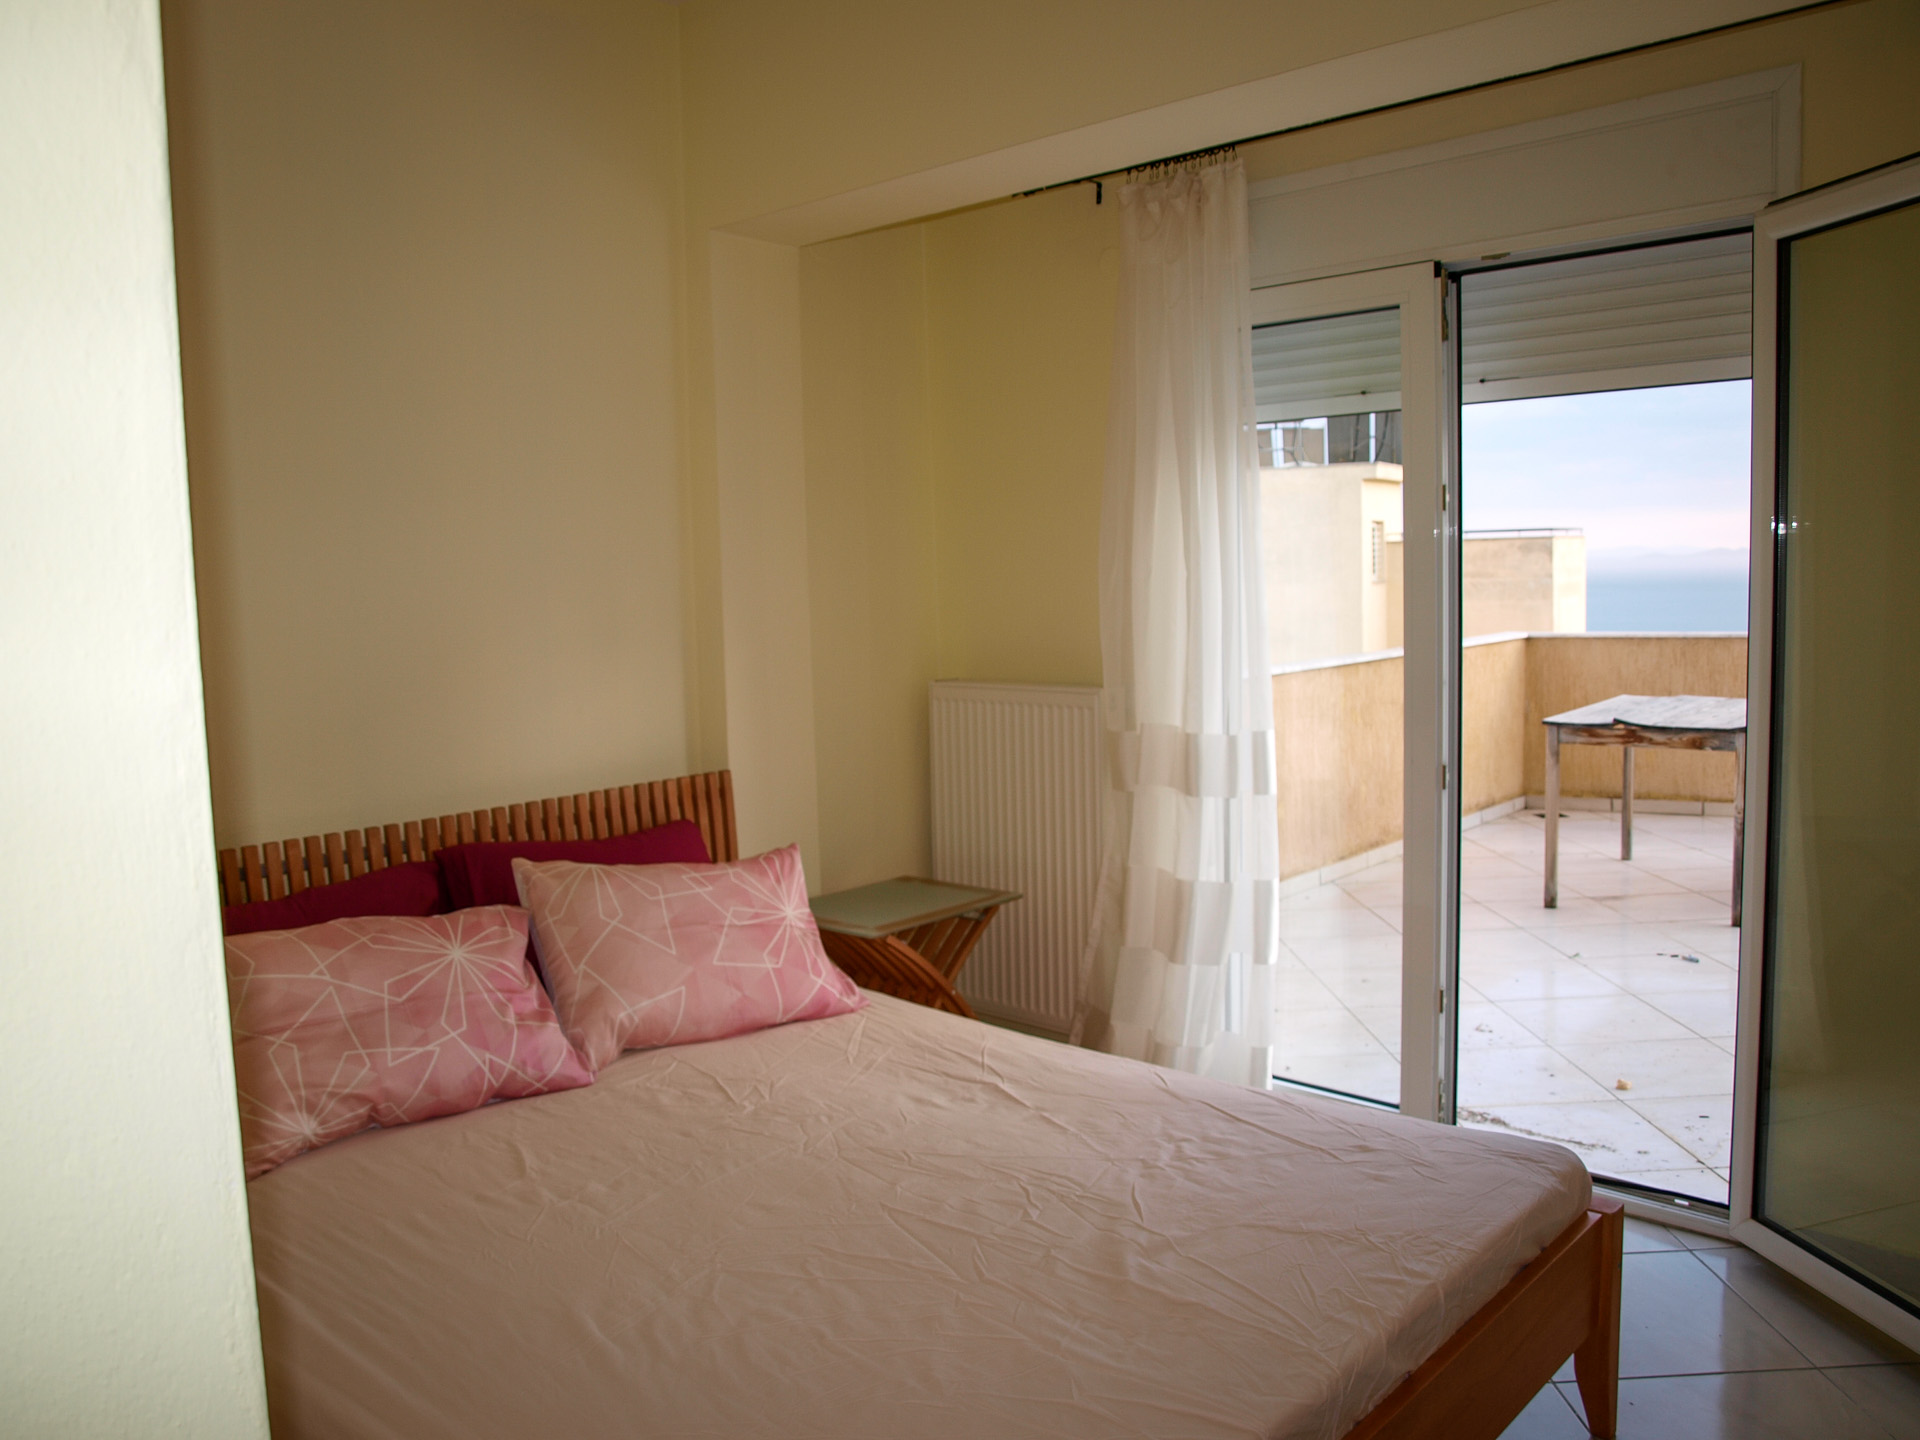 Wohnung in Kavala, Griechenland zu verkaufen. Großes Schlafzimmer mit Meerblick.